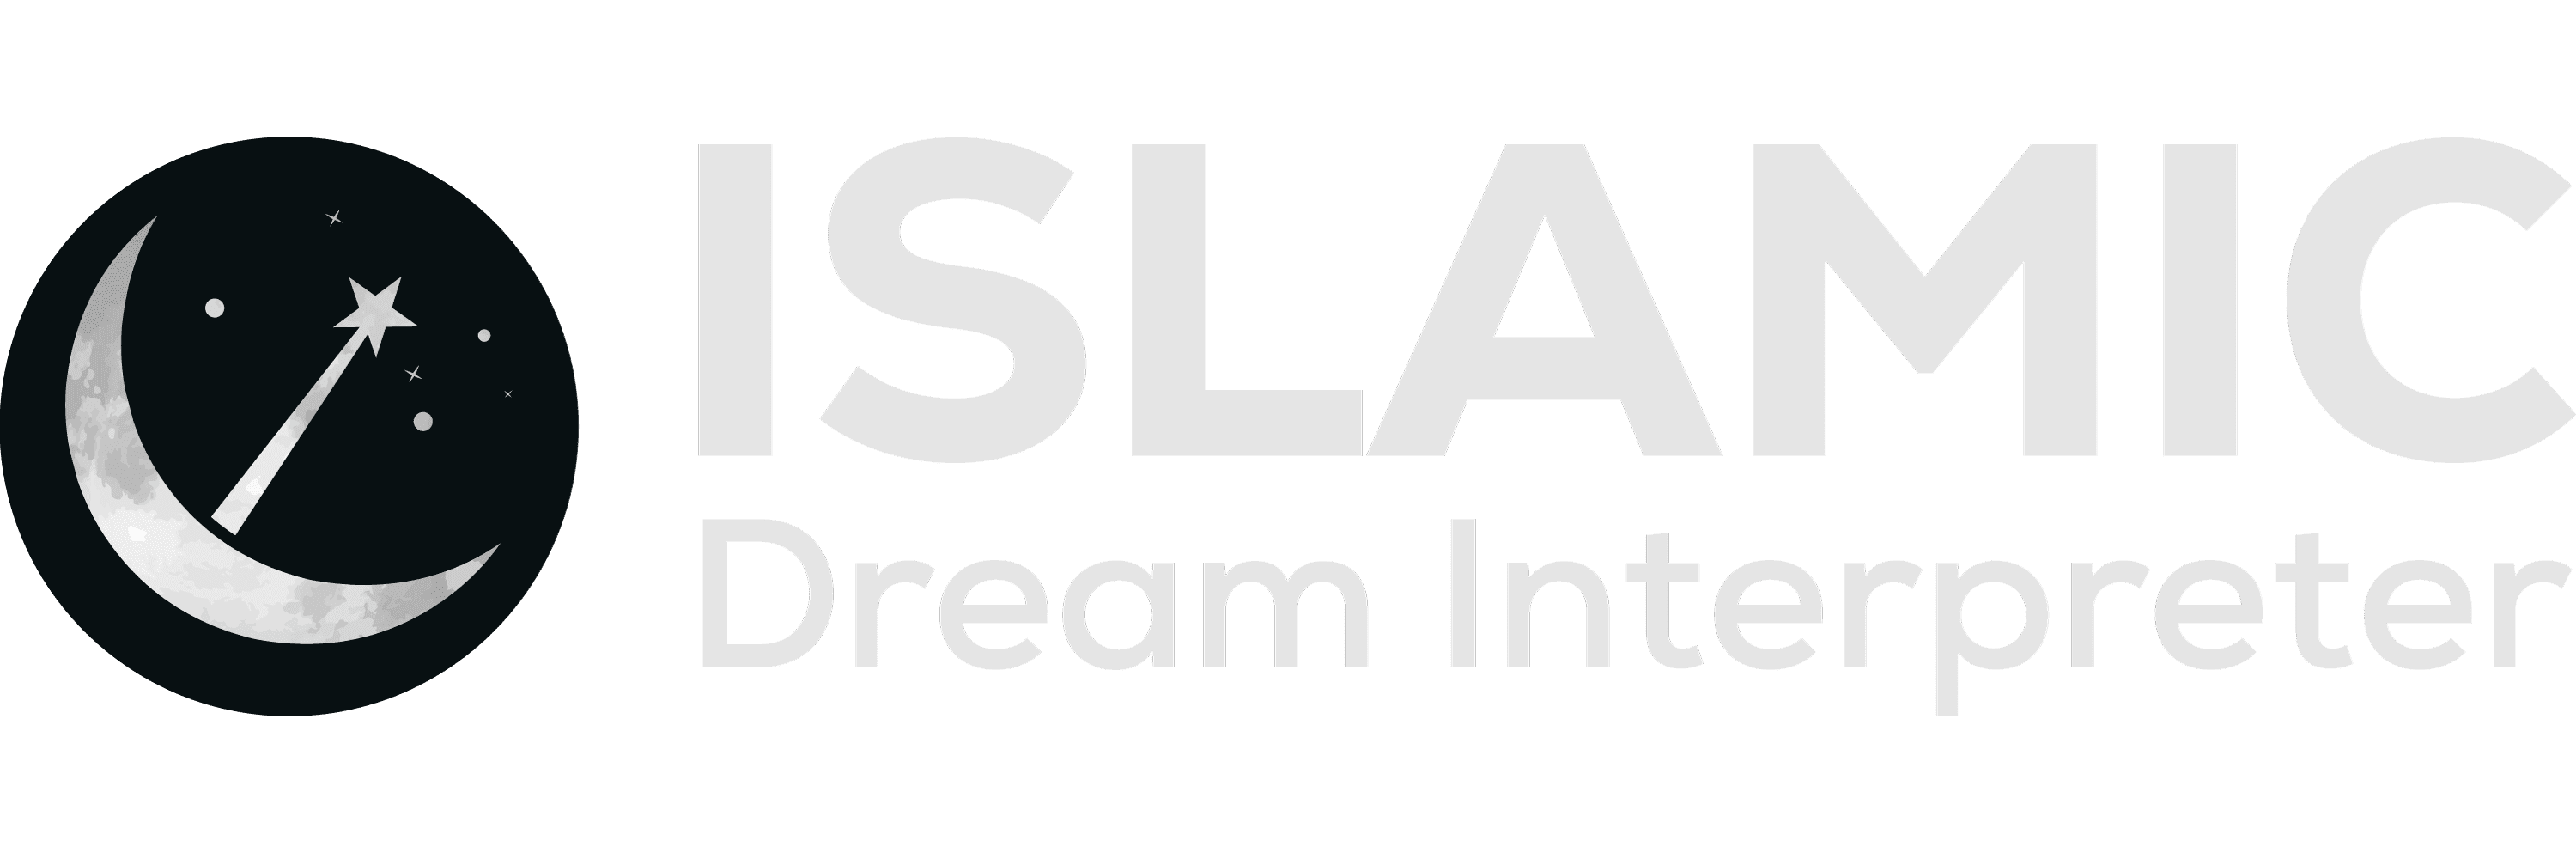 Islamic Dream Interpreter